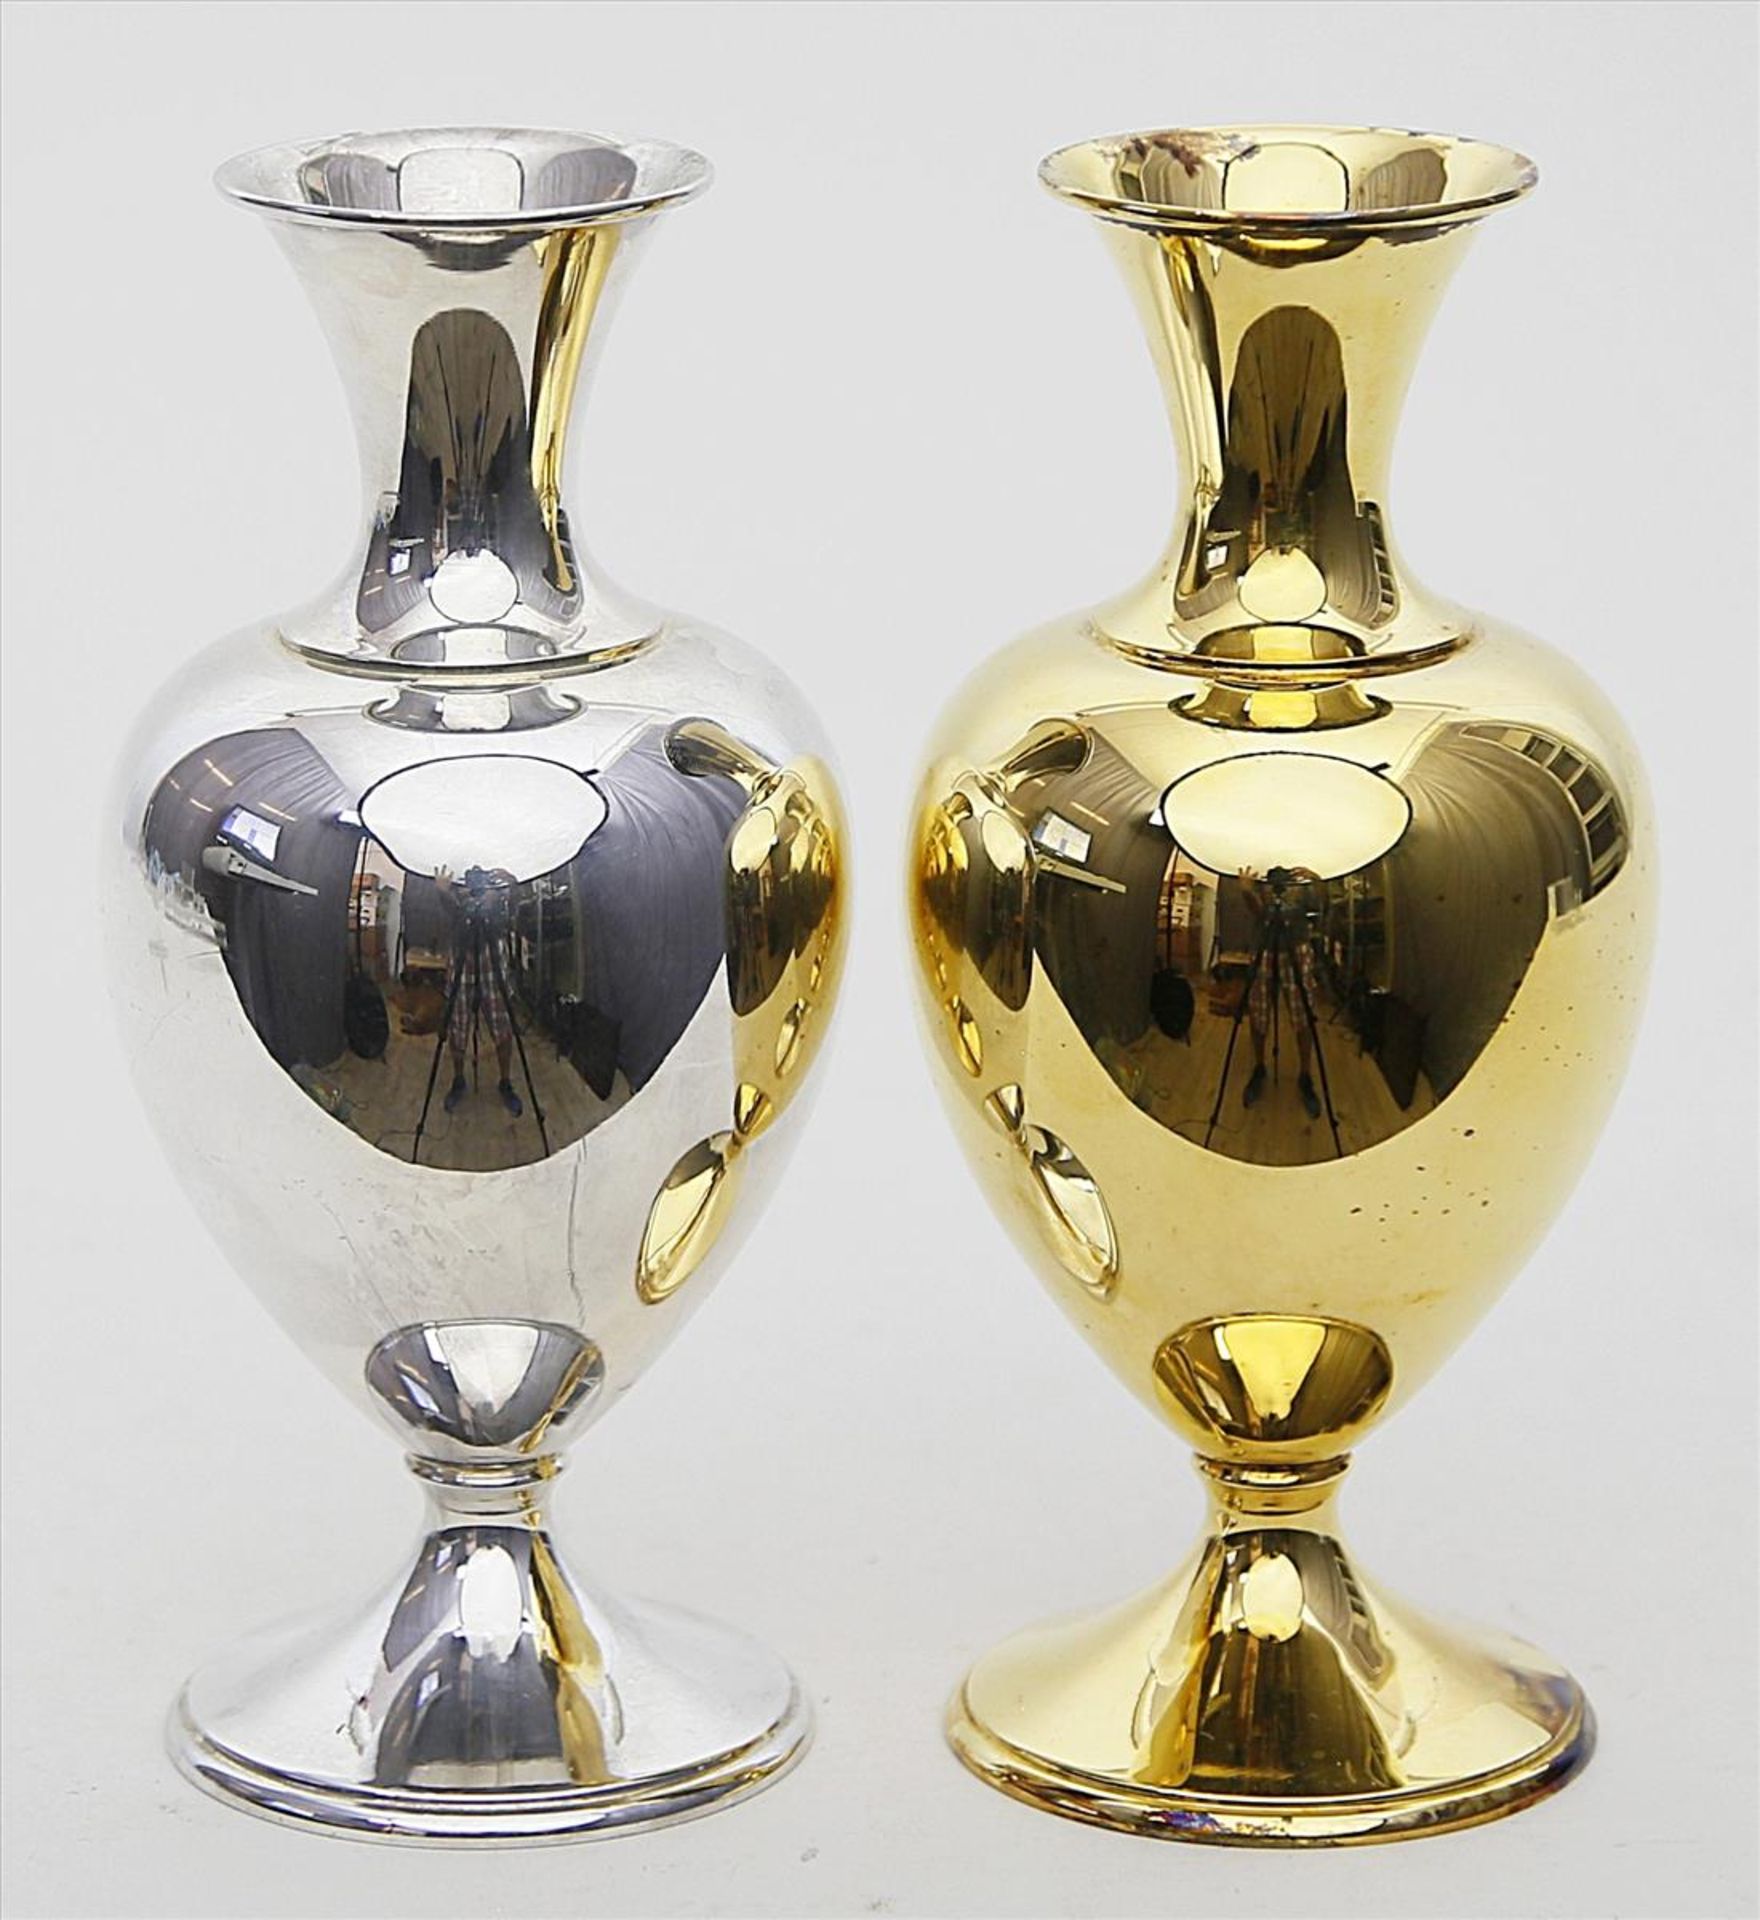 Paar Vasen.800/000 Silber, einmal vergoldet, 462 g. Glatte Balusterform. Mz. Jezler (gegründet